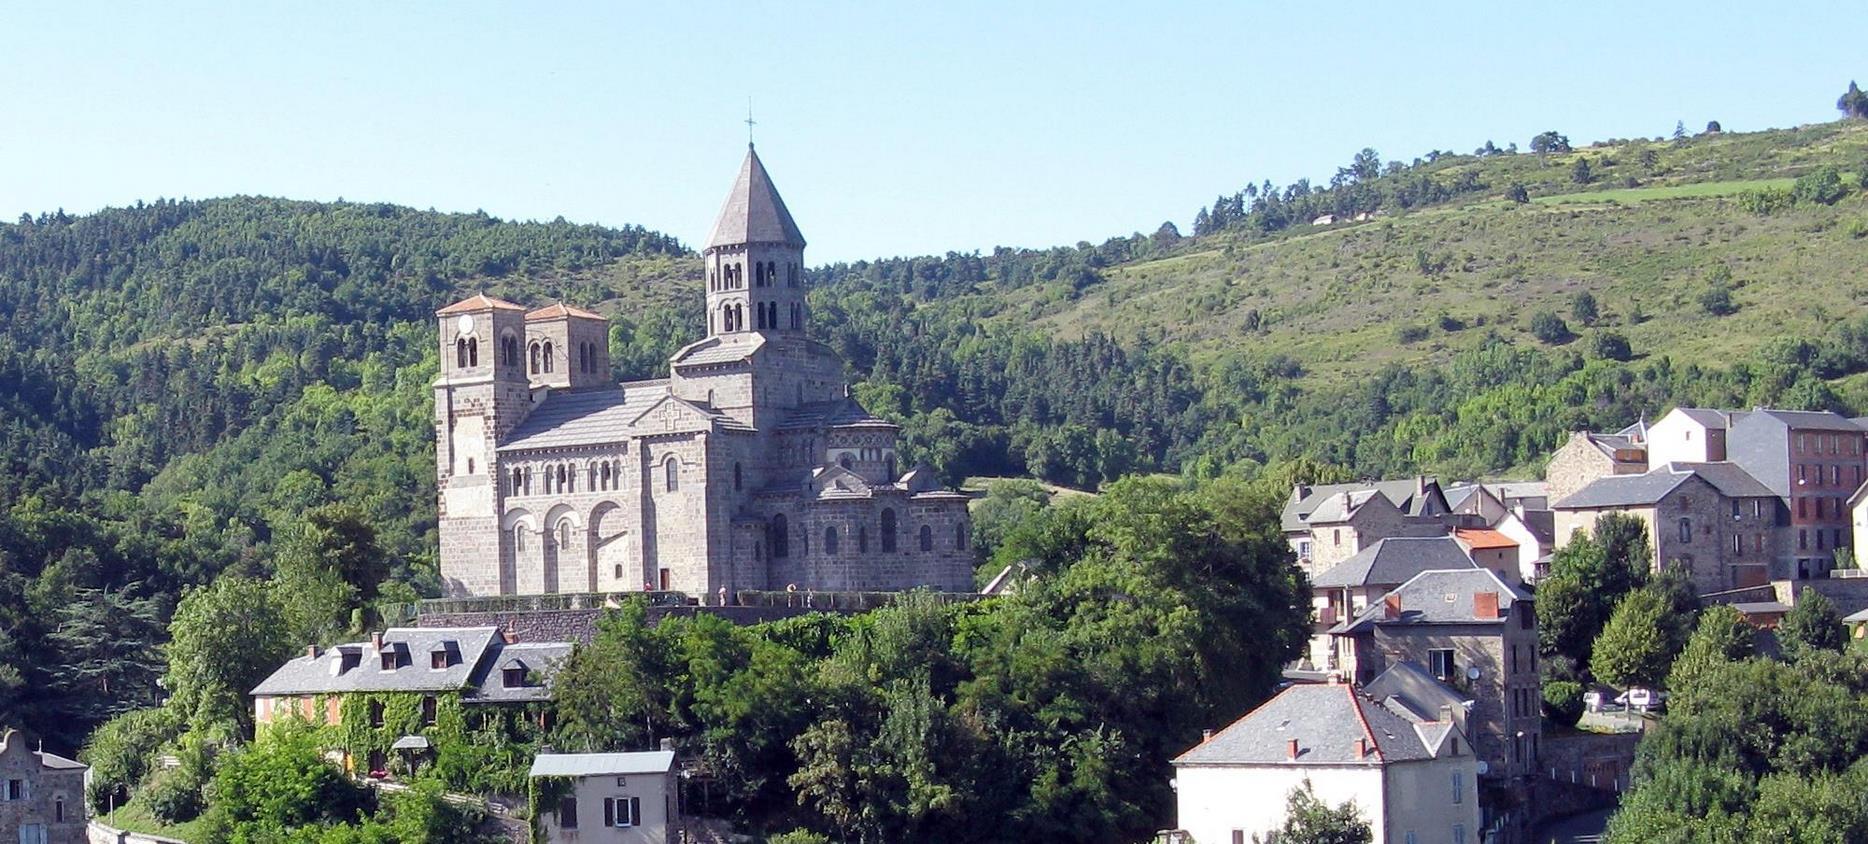 Saint Nectaire - Eglise dominant le Vilage de St Nectaire en Auvergne